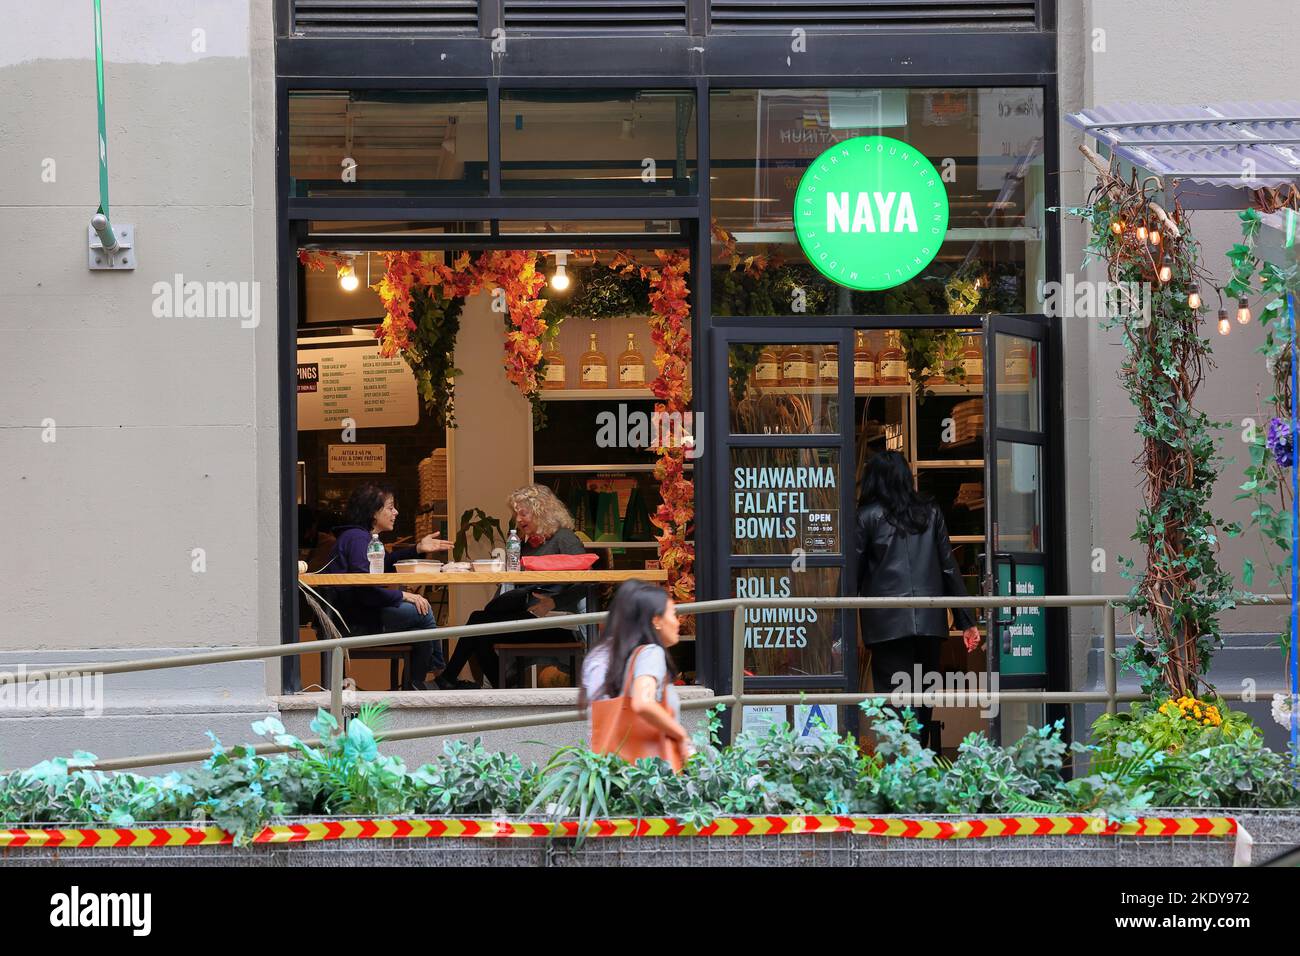 NAYA, 83 University PL, Nueva York, Nueva York, Nueva York, foto del escaparate de un restaurante informal rápido de Oriente Medio en el barrio de Greenwich Village. Foto de stock